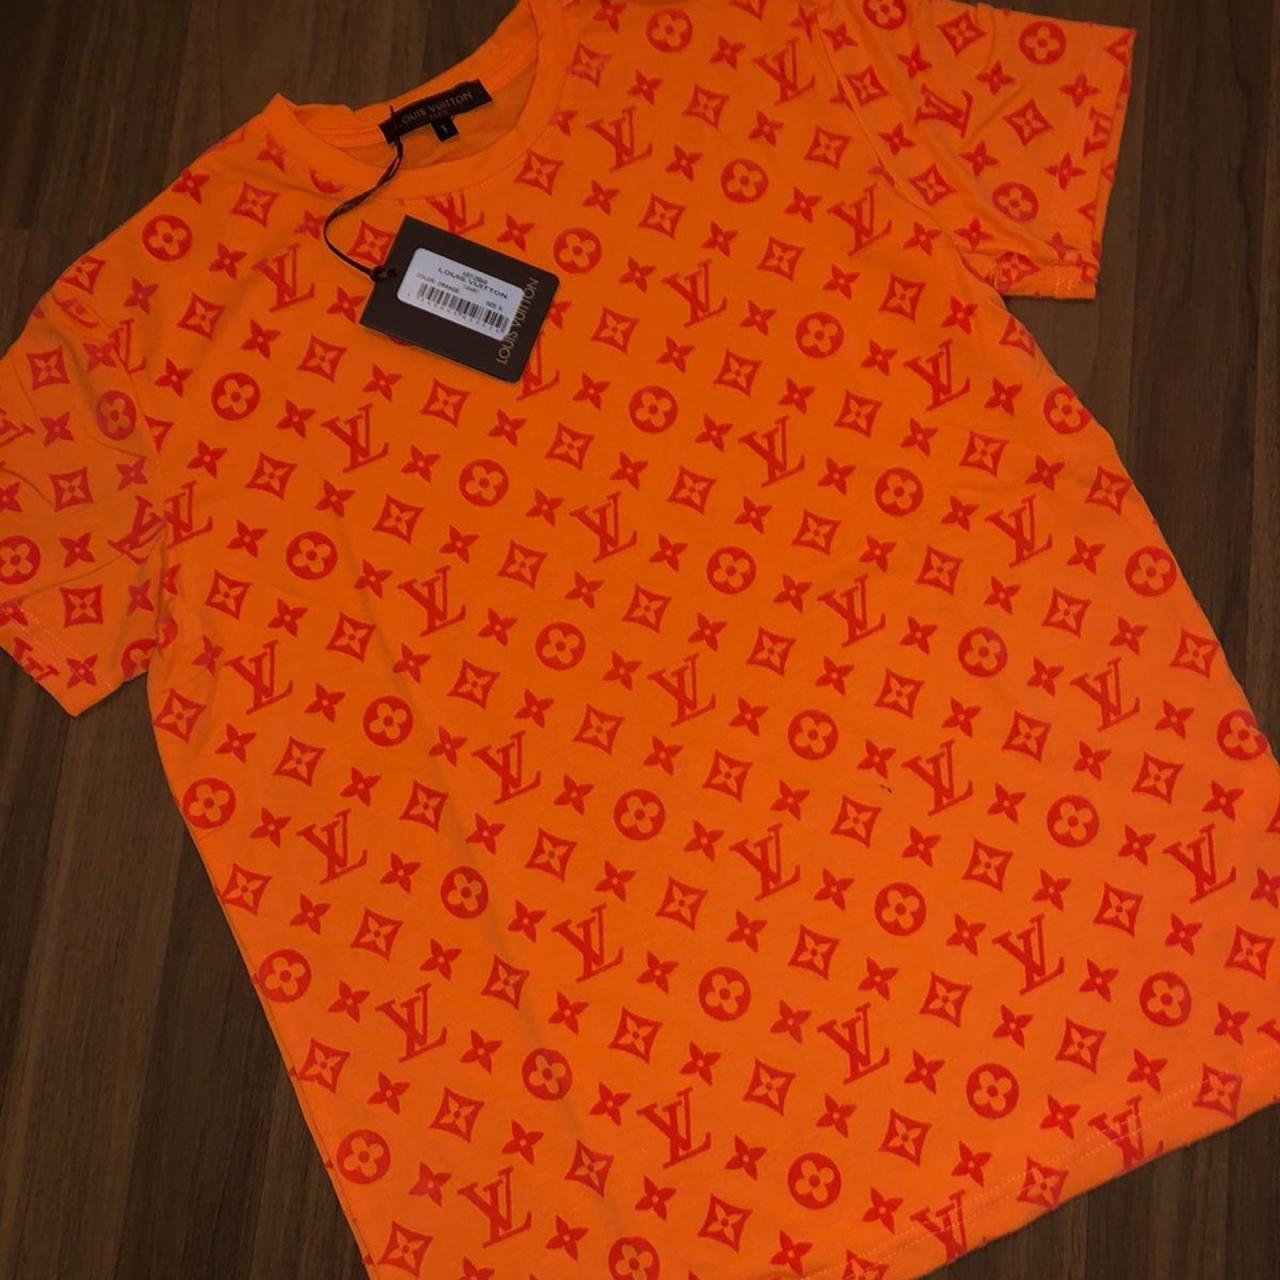 orange lv shirt